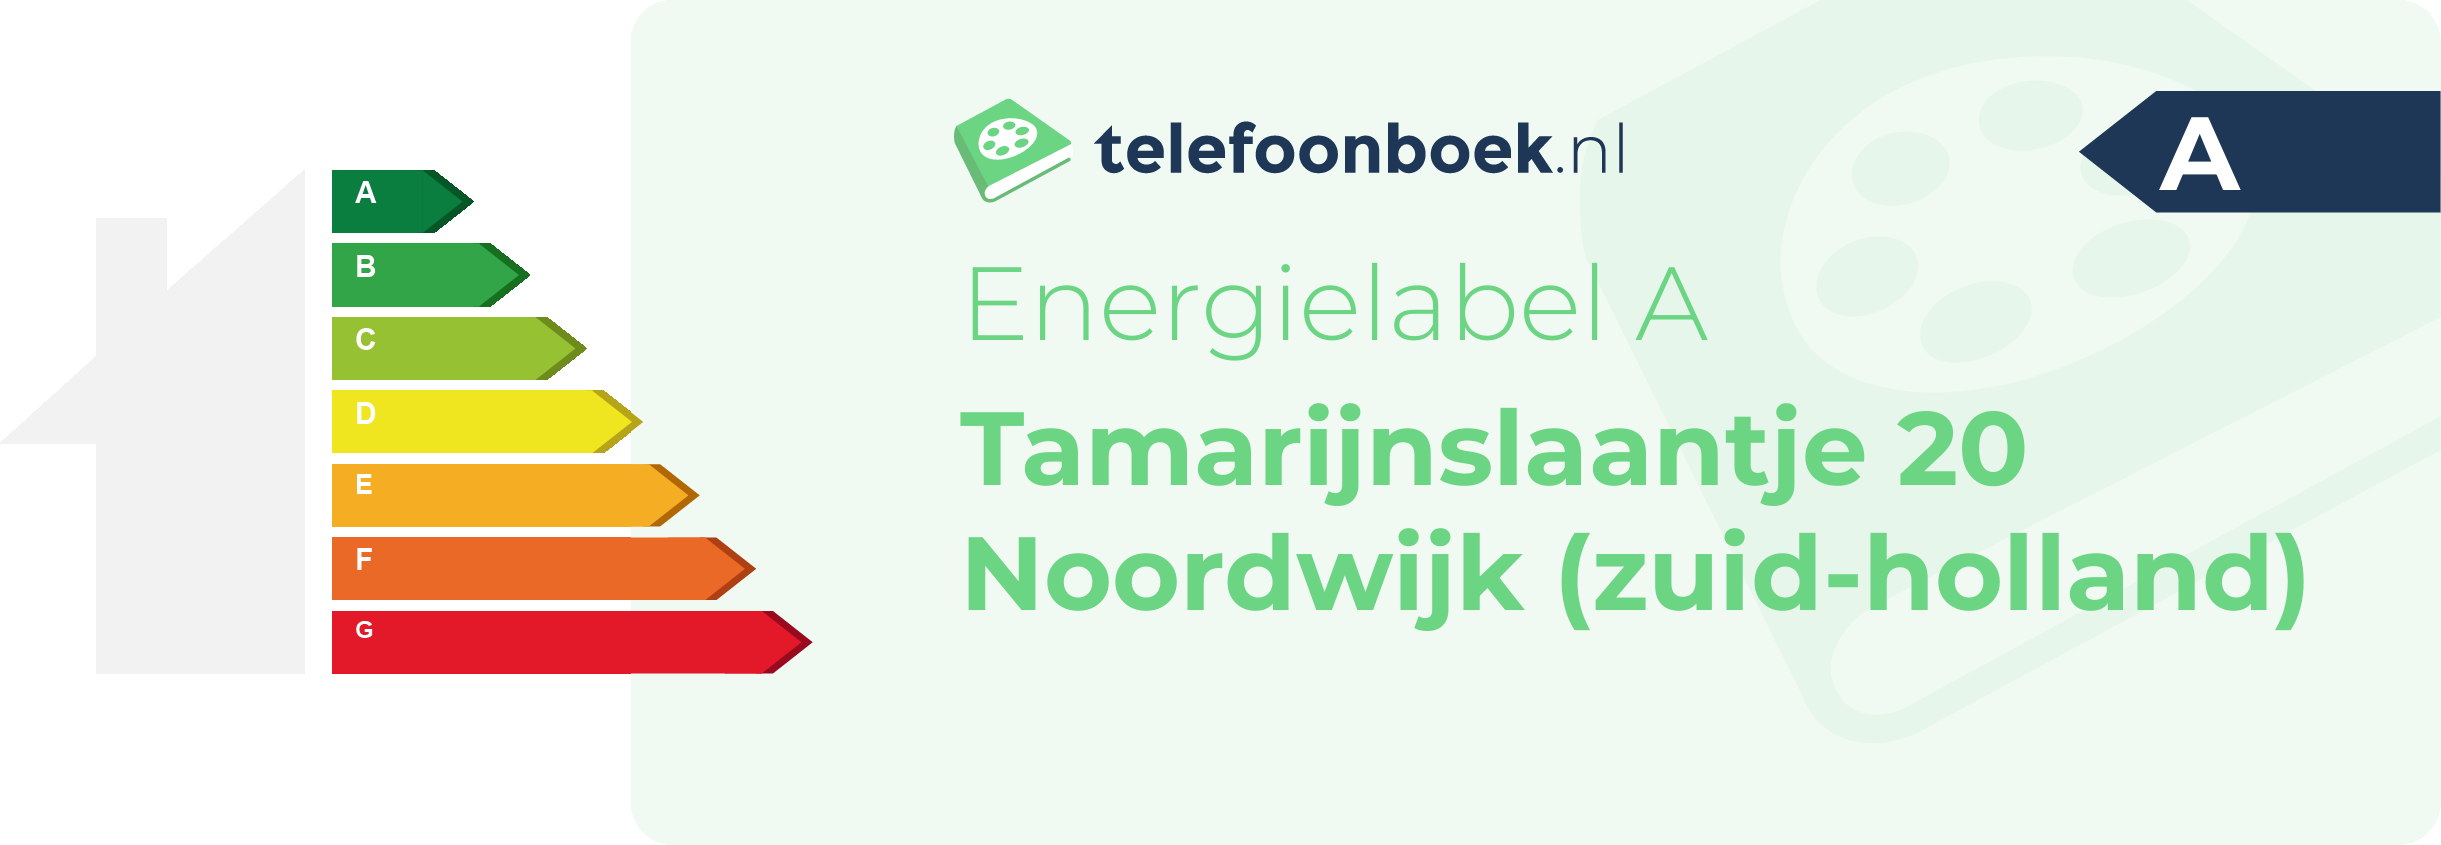 Energielabel Tamarijnslaantje 20 Noordwijk (Zuid-Holland)